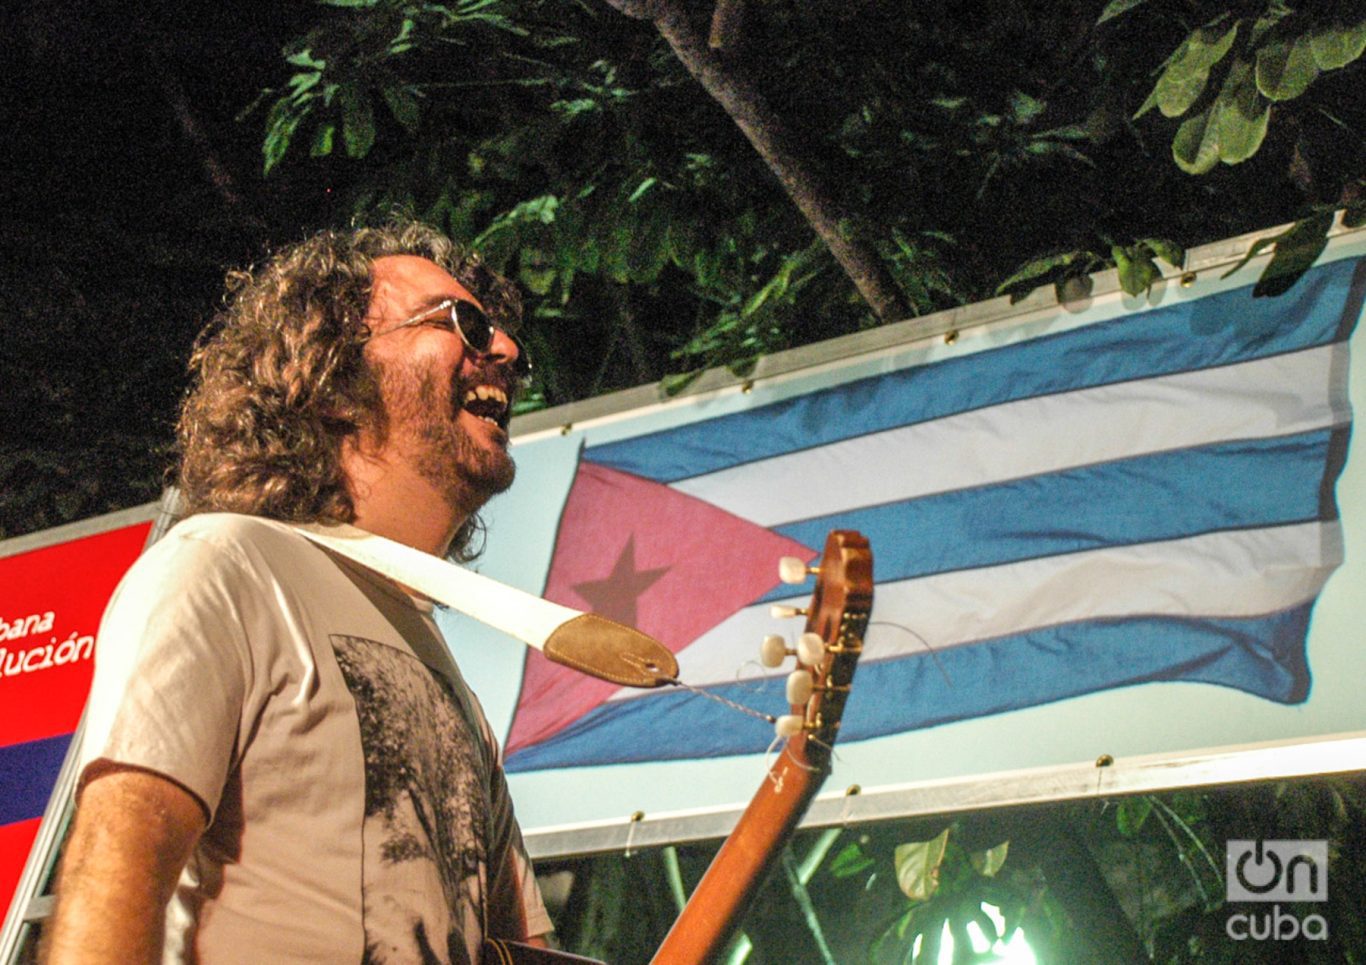 Santiago Feliú en un concierto en el Pabellón Cuba, en La Habana, en
el año 2009. Foto: Kaloian.